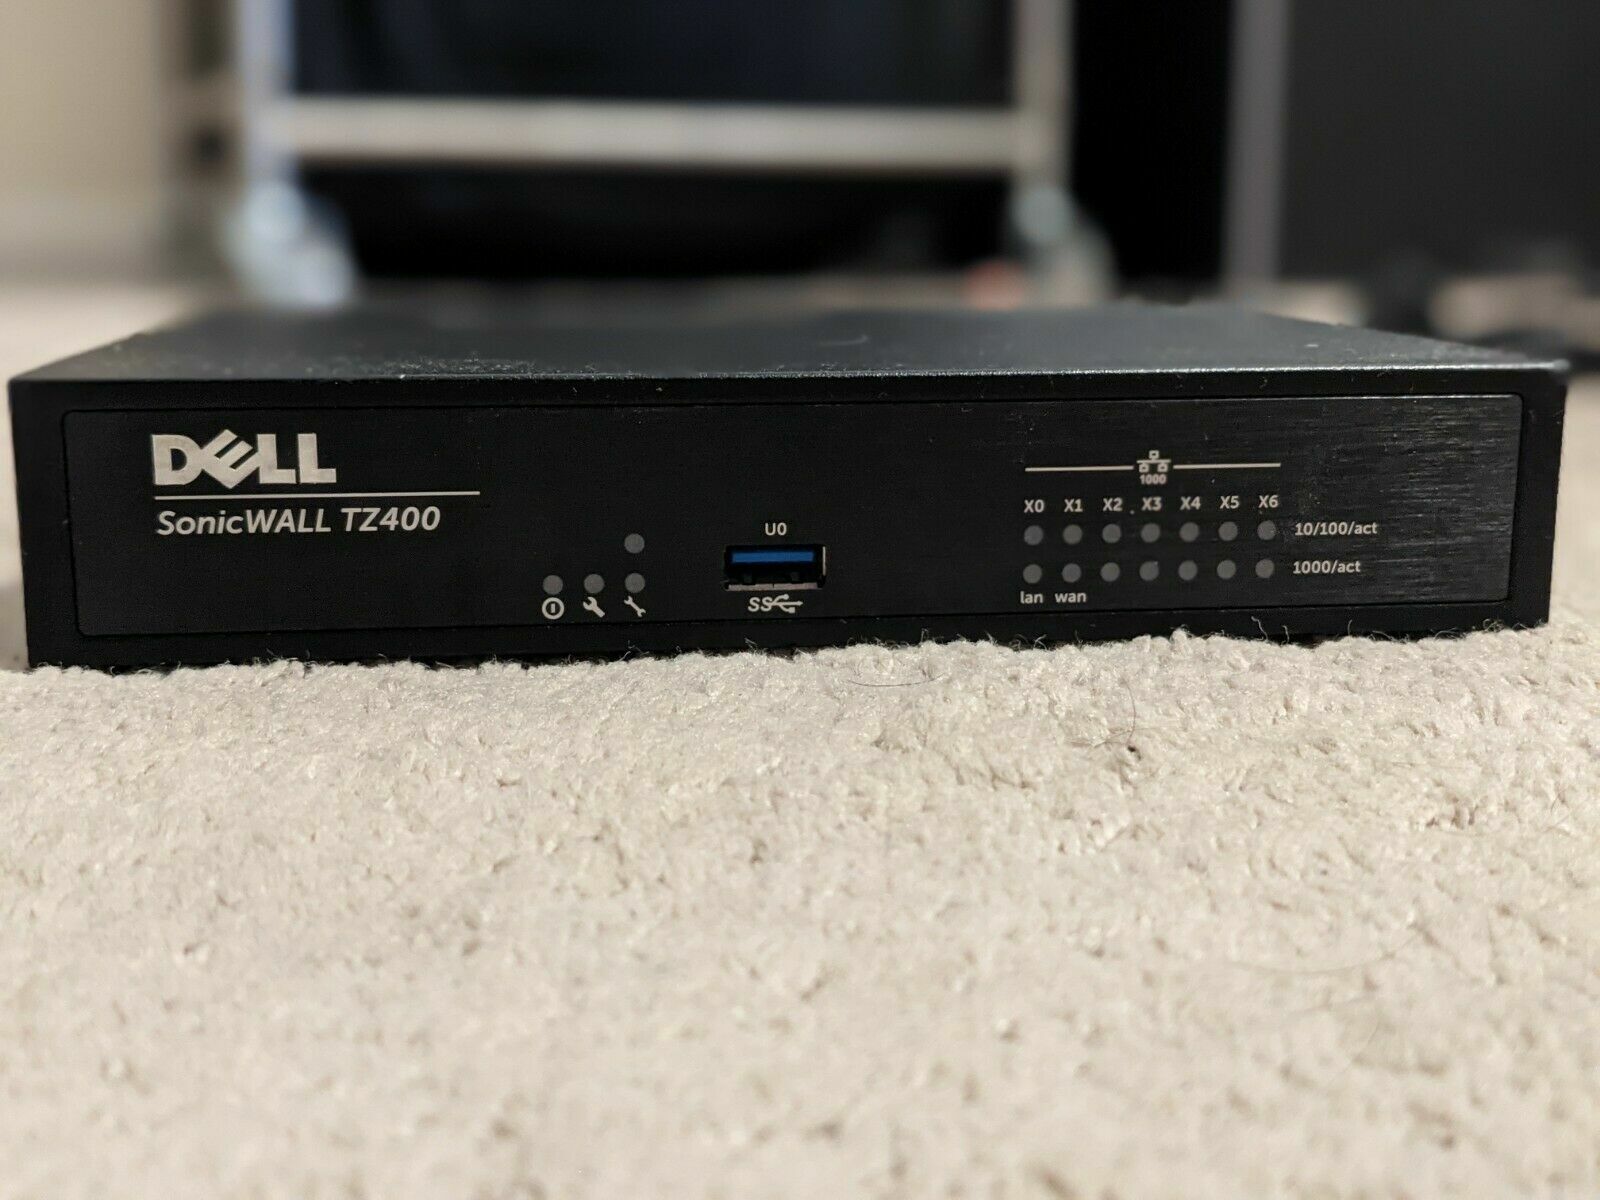 Dell SonicWall TZ400 Firewall Appliance - read